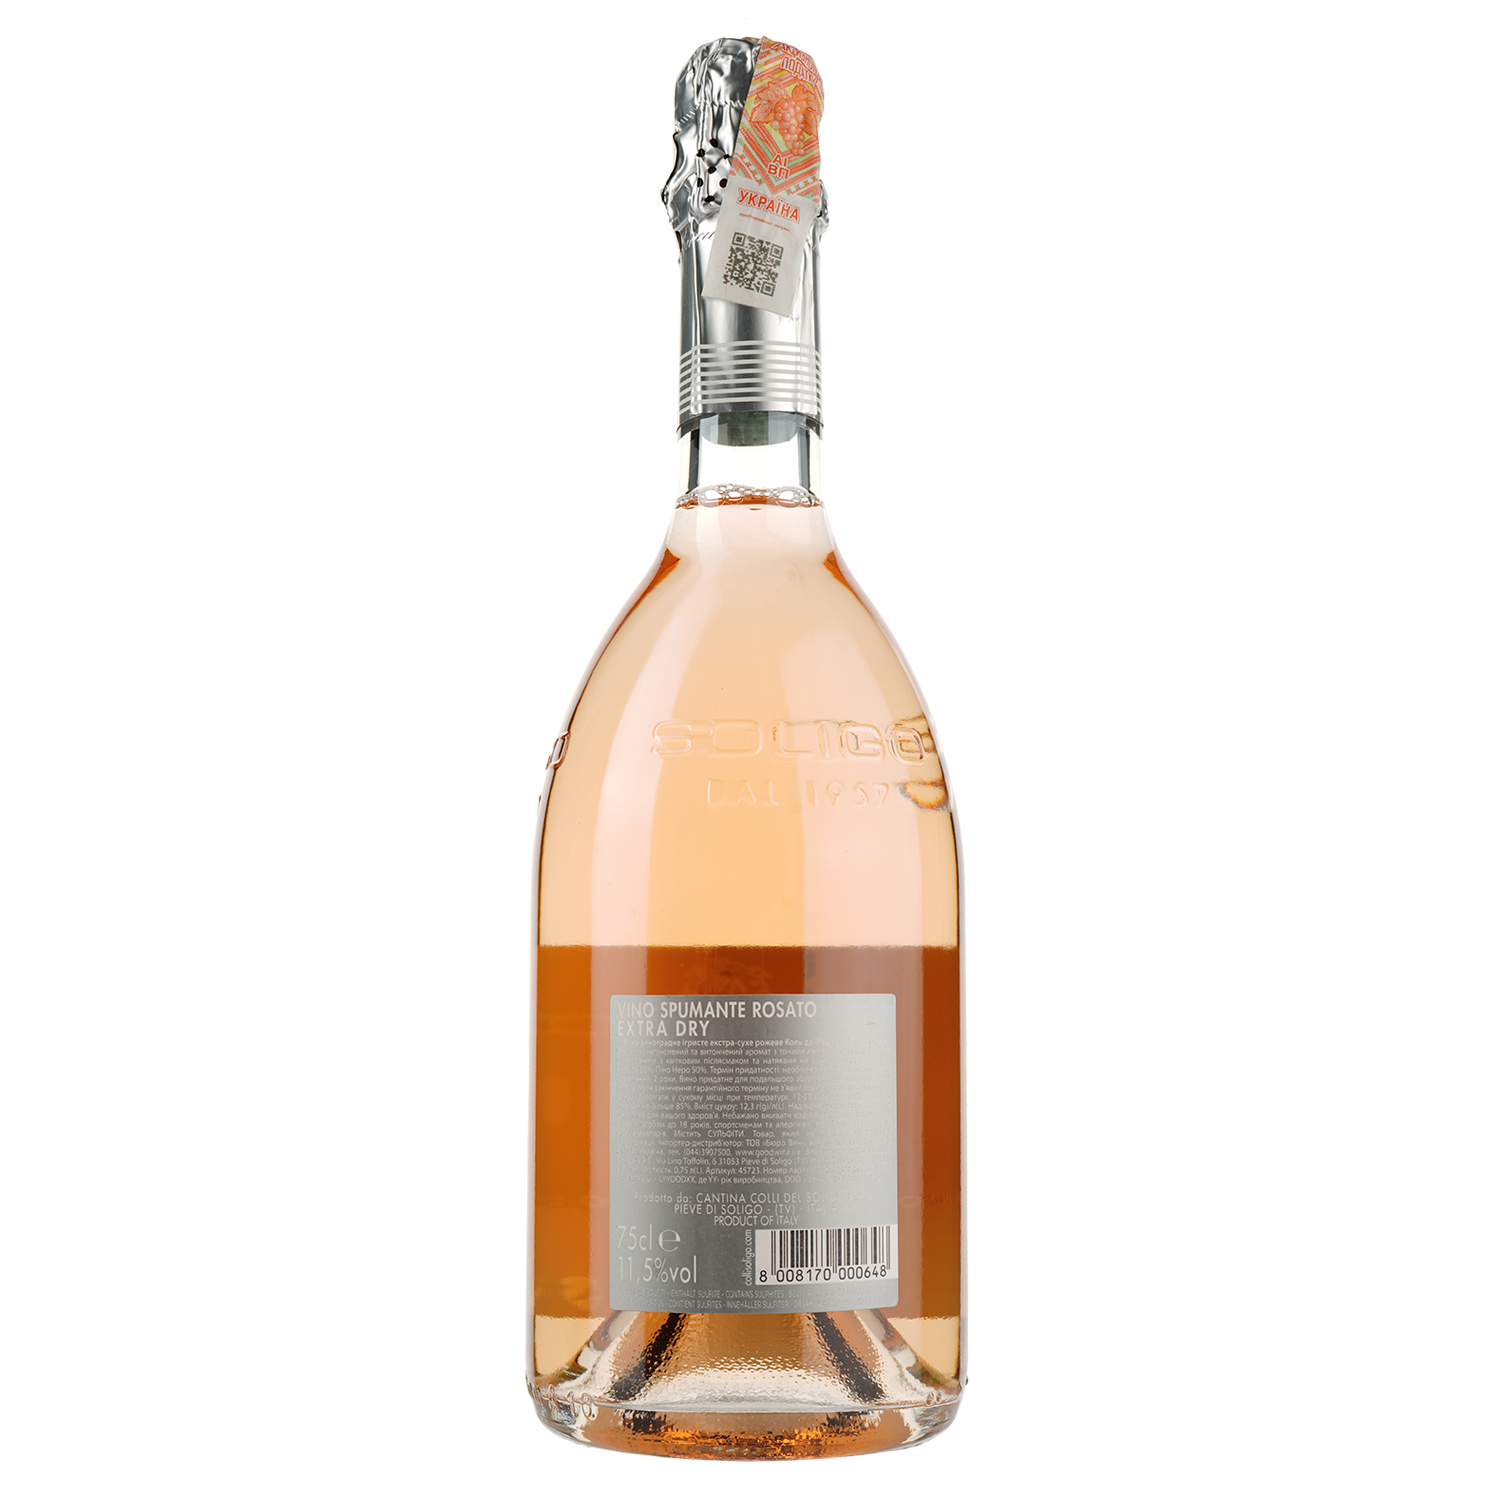 Вино игристое Soligo Col de Mez Rose Extra Dry, розовое, экстра-сухое, 11,5%, 0,75 л (45723) - фото 2